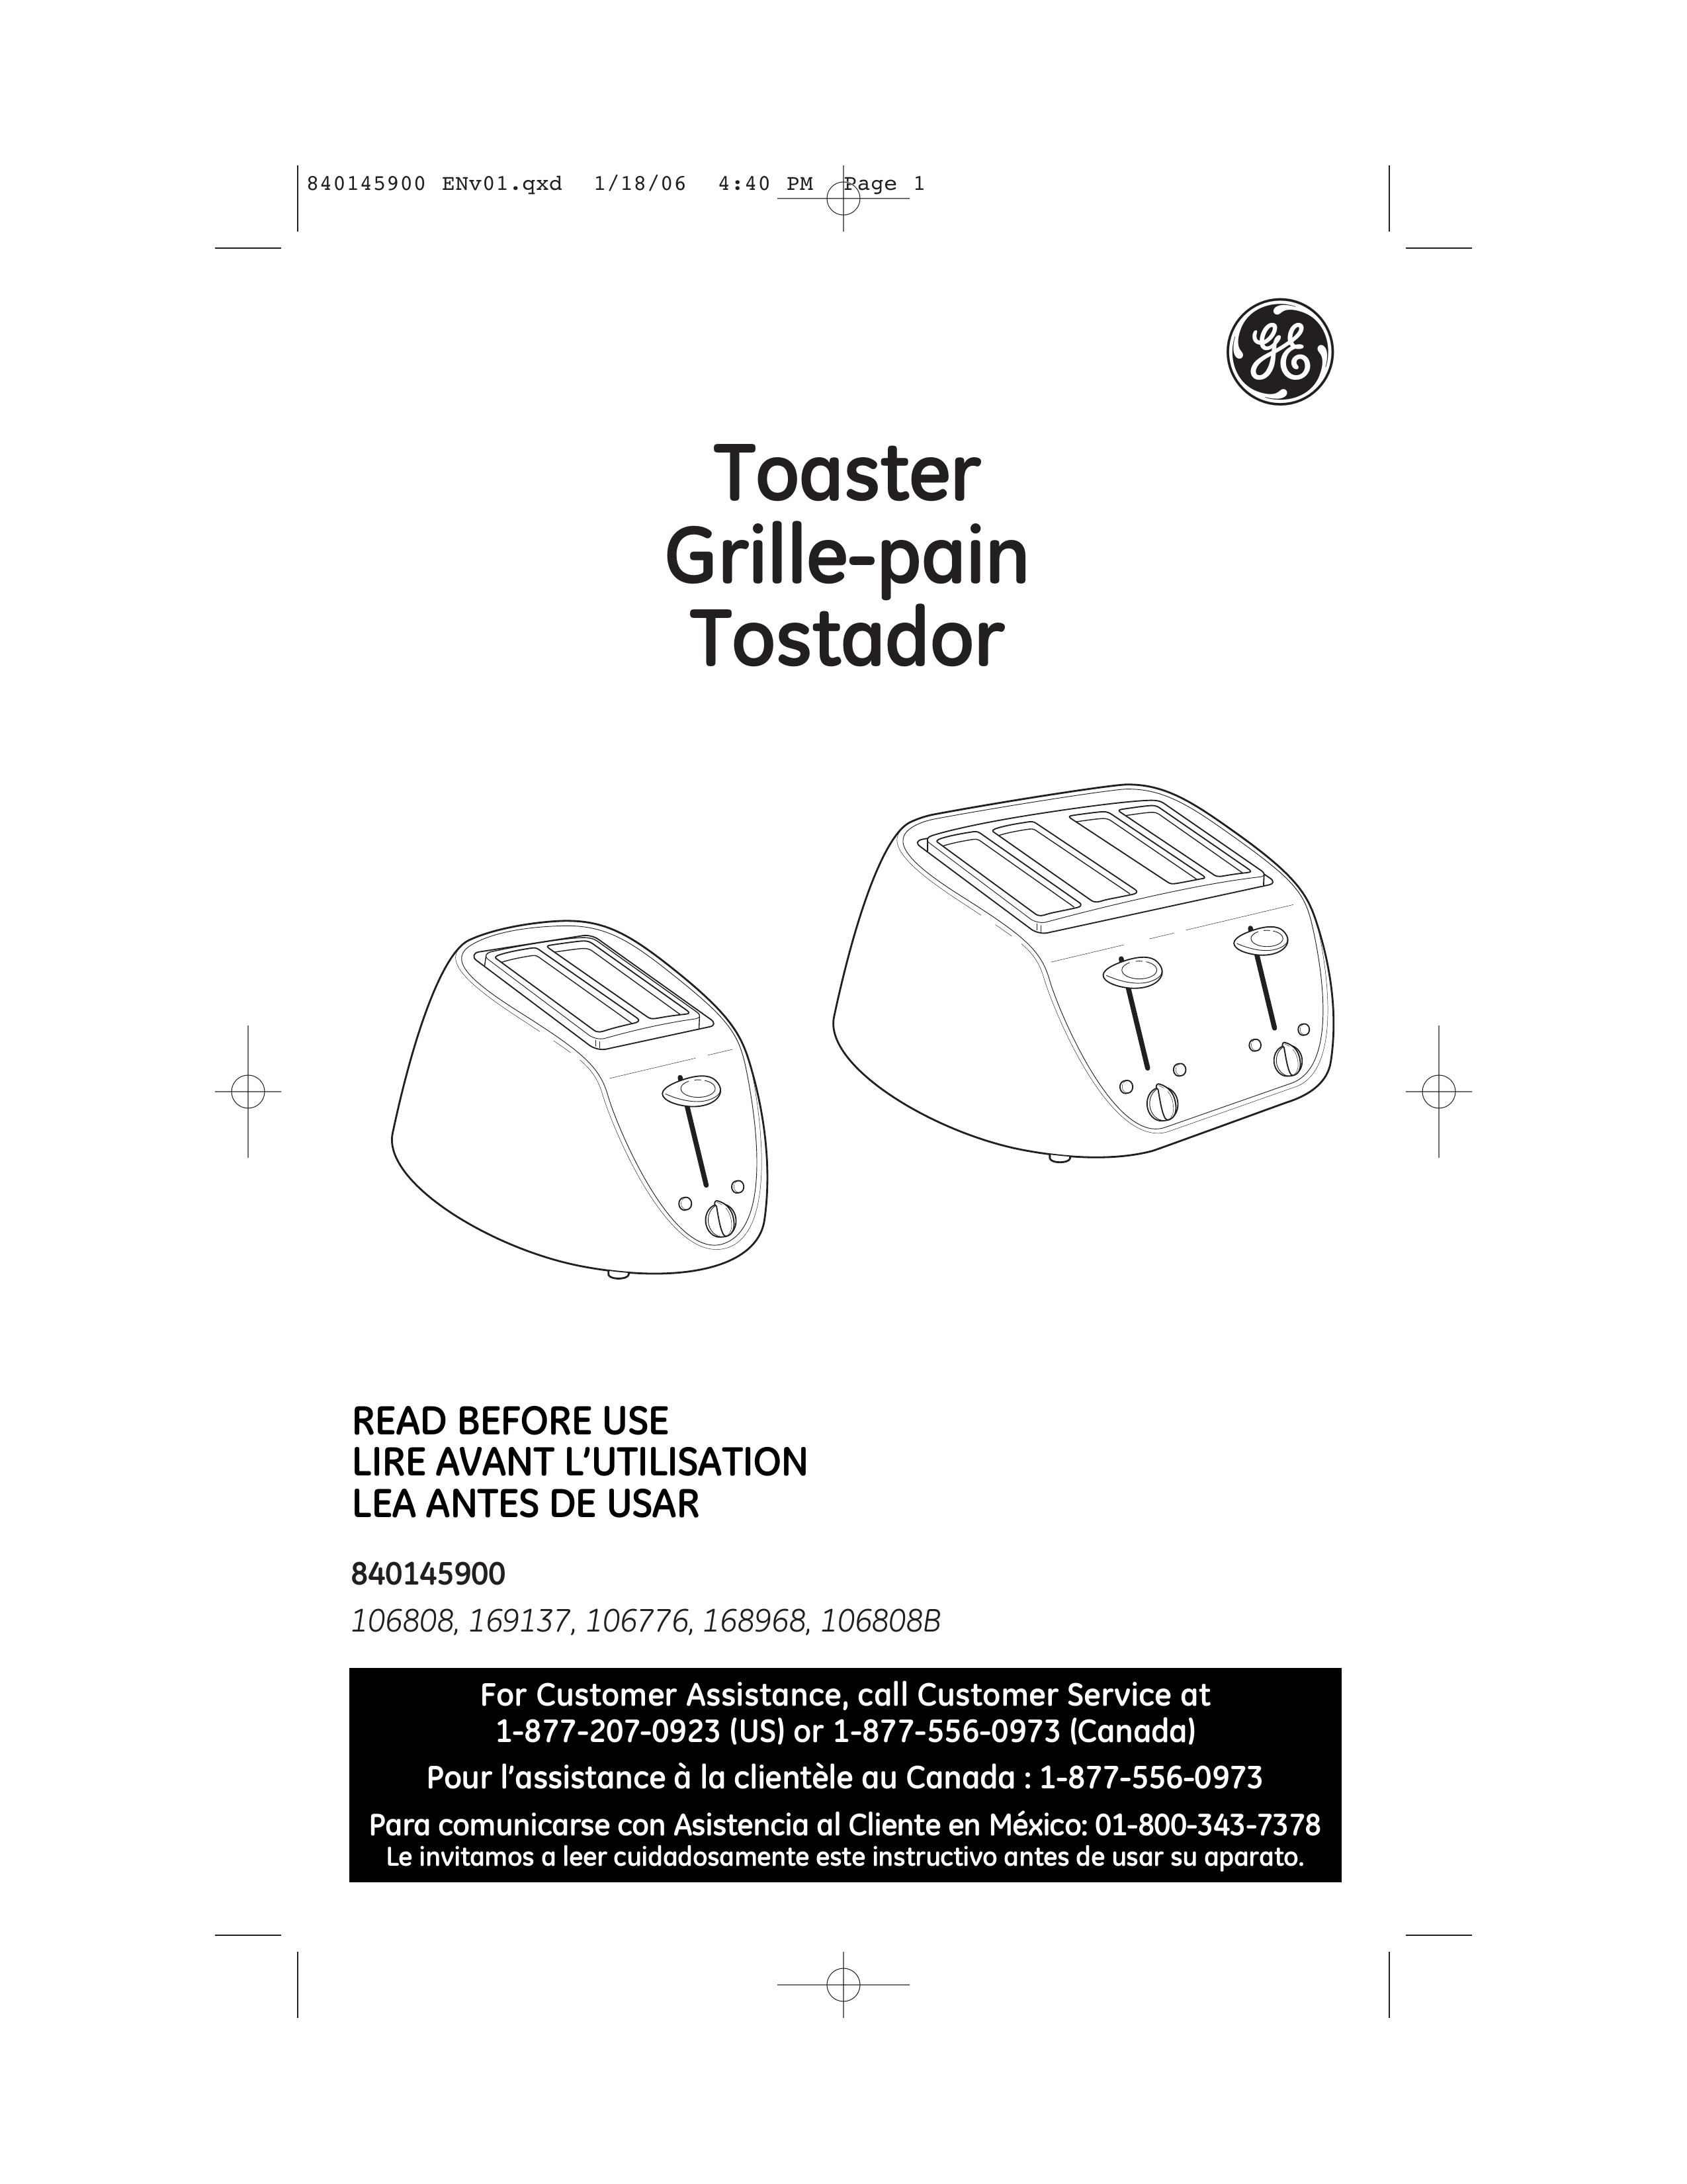 GE 106808B Toaster User Manual